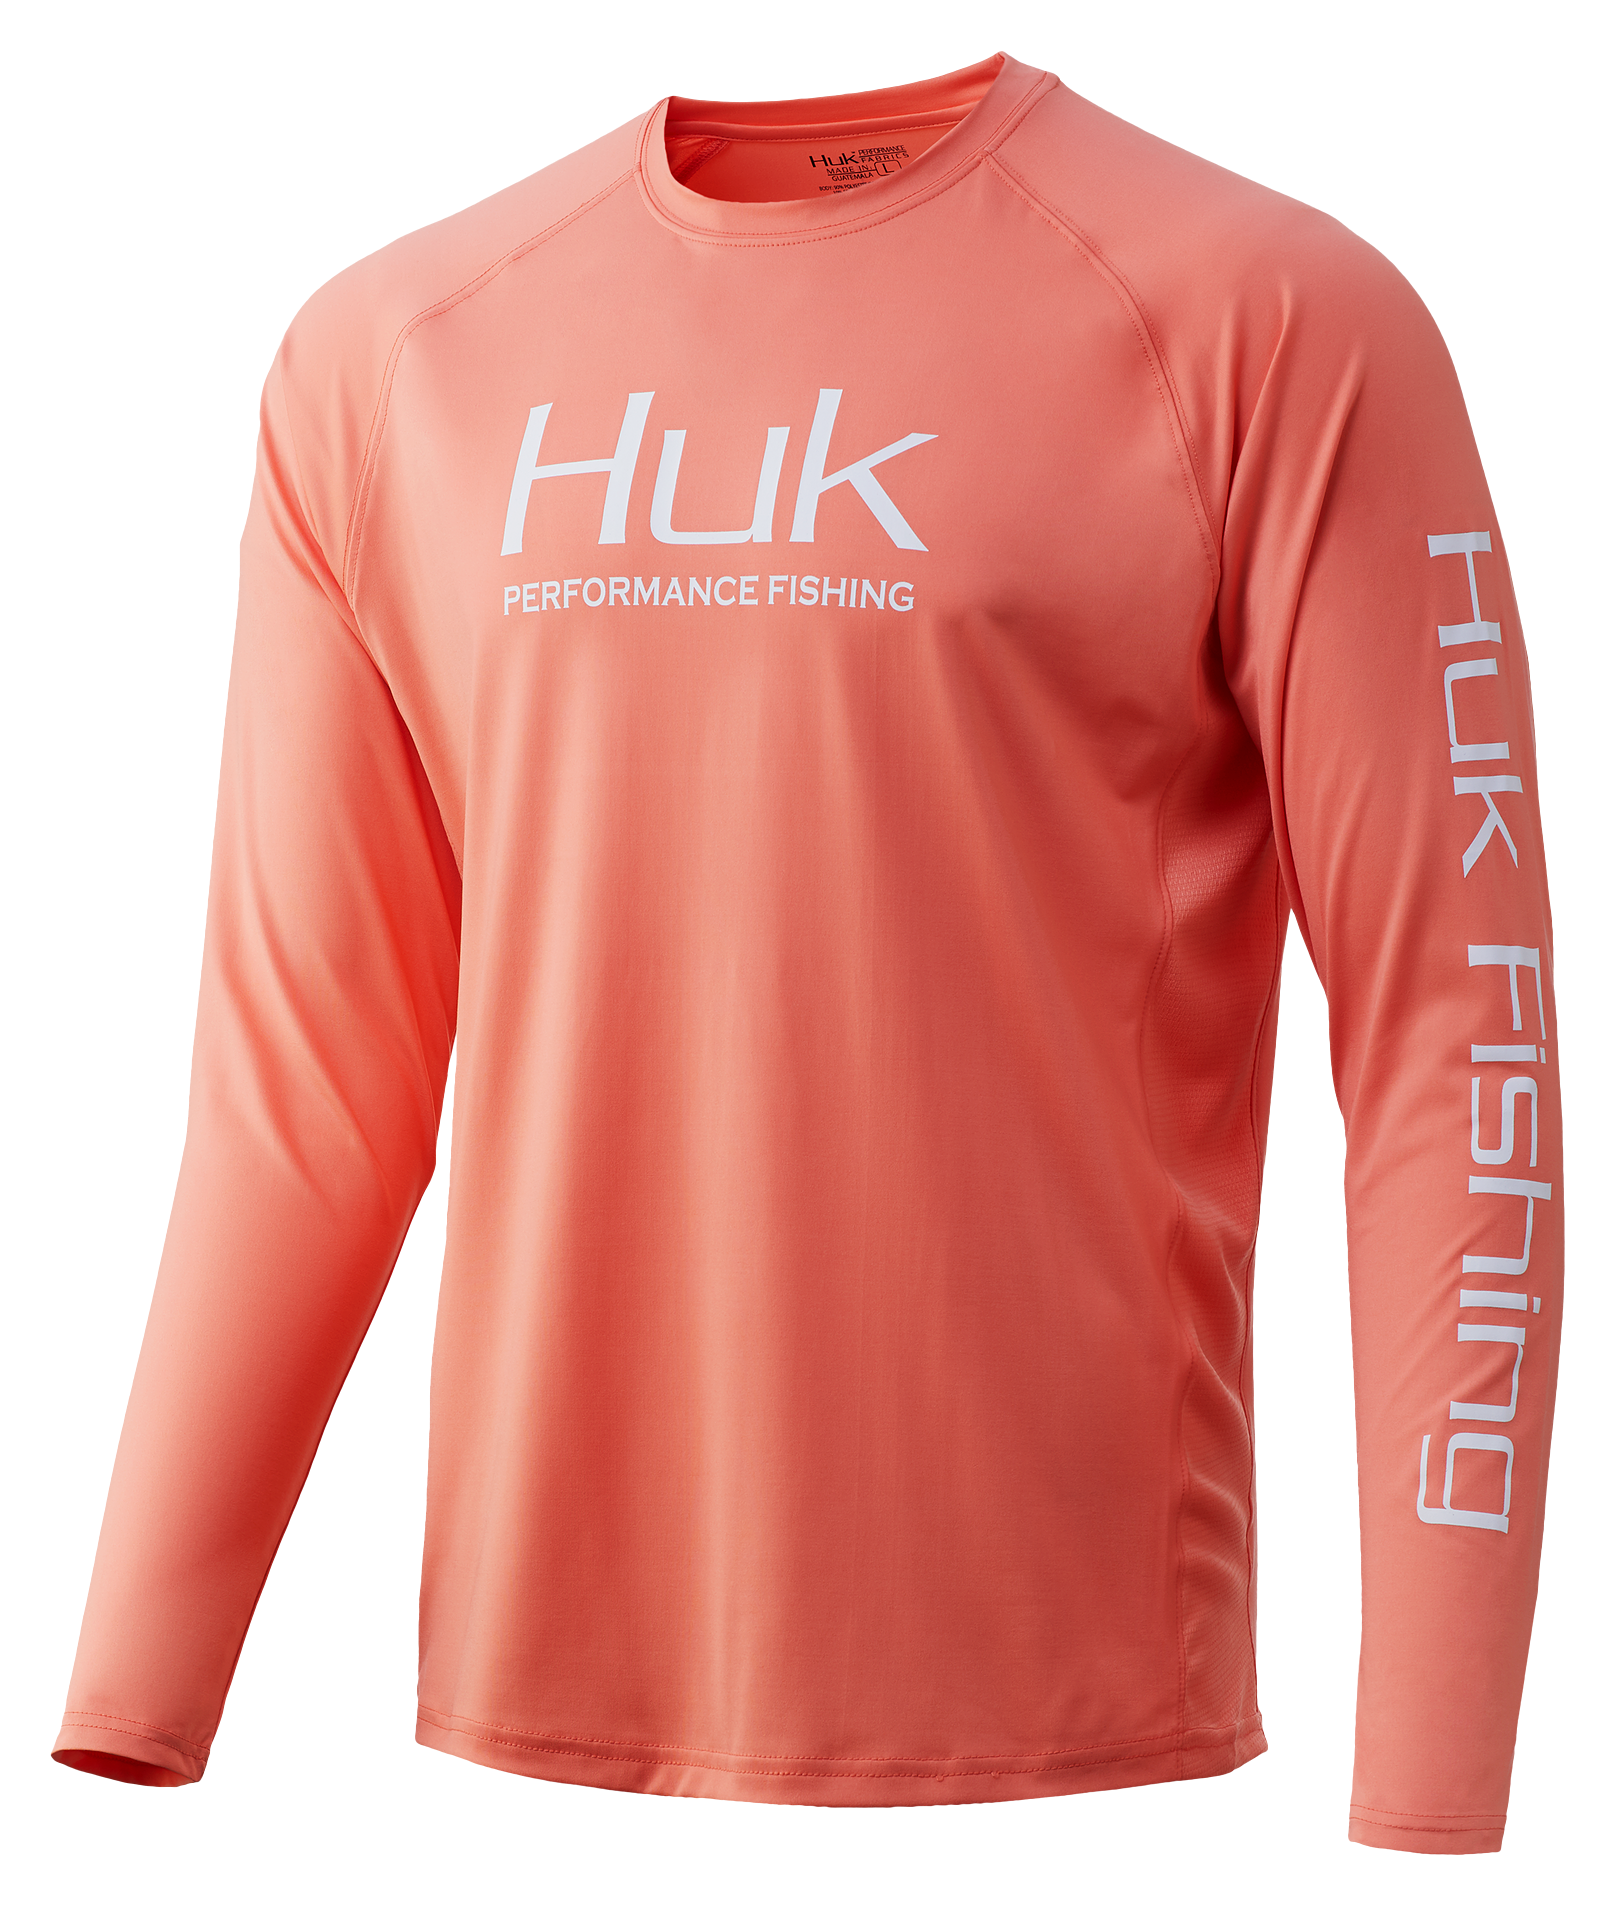 Huk Men's Refraction Fish Fade Pursuit Shirt Storm Bass Medium